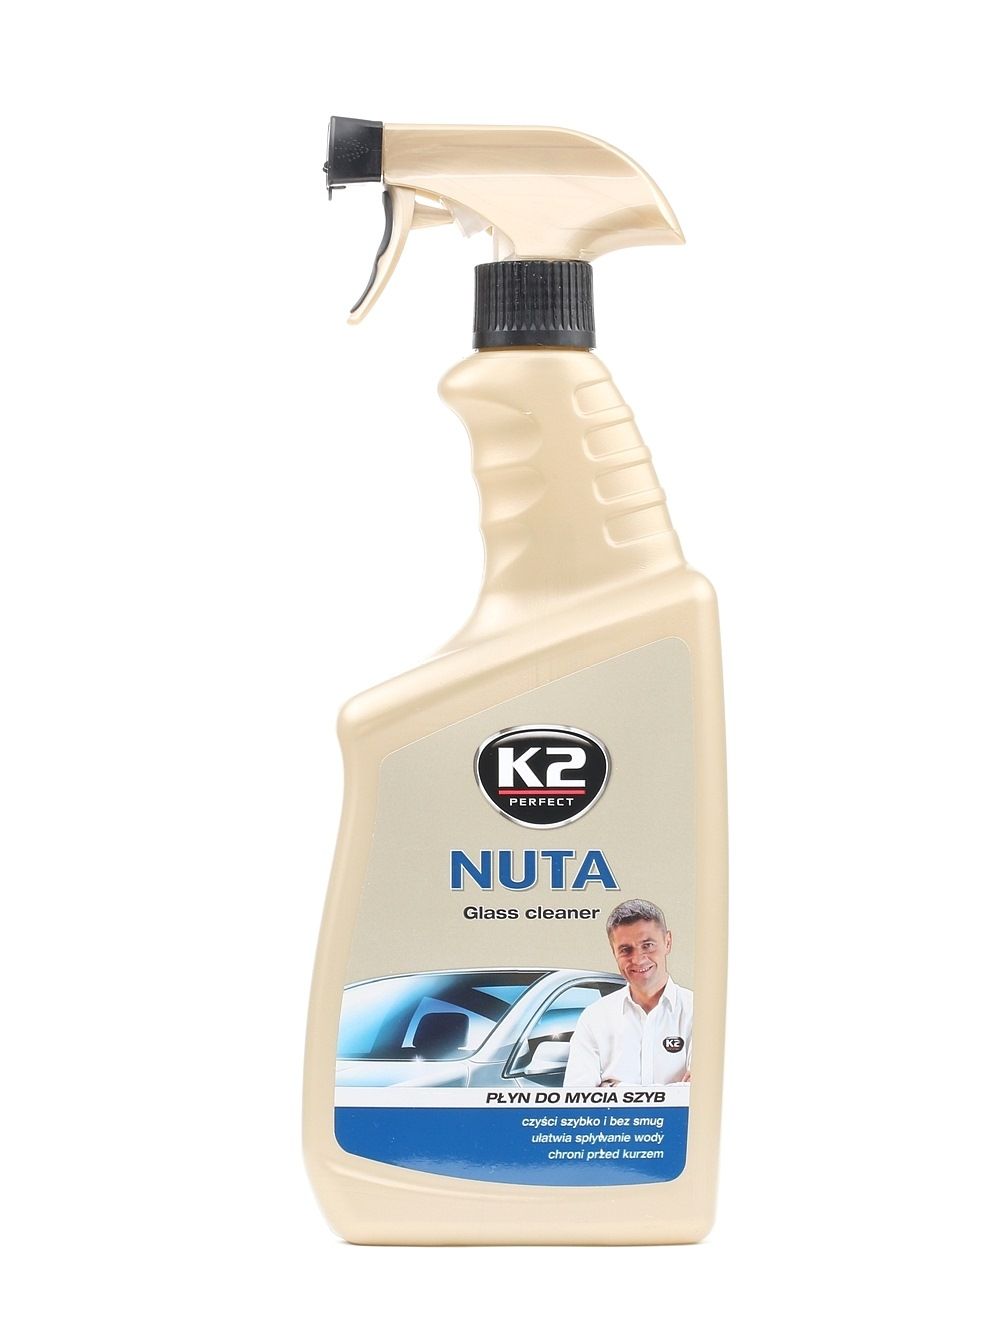 K2 K507 Liquide pour le pare-brise aérosol, Capacité: 770ml